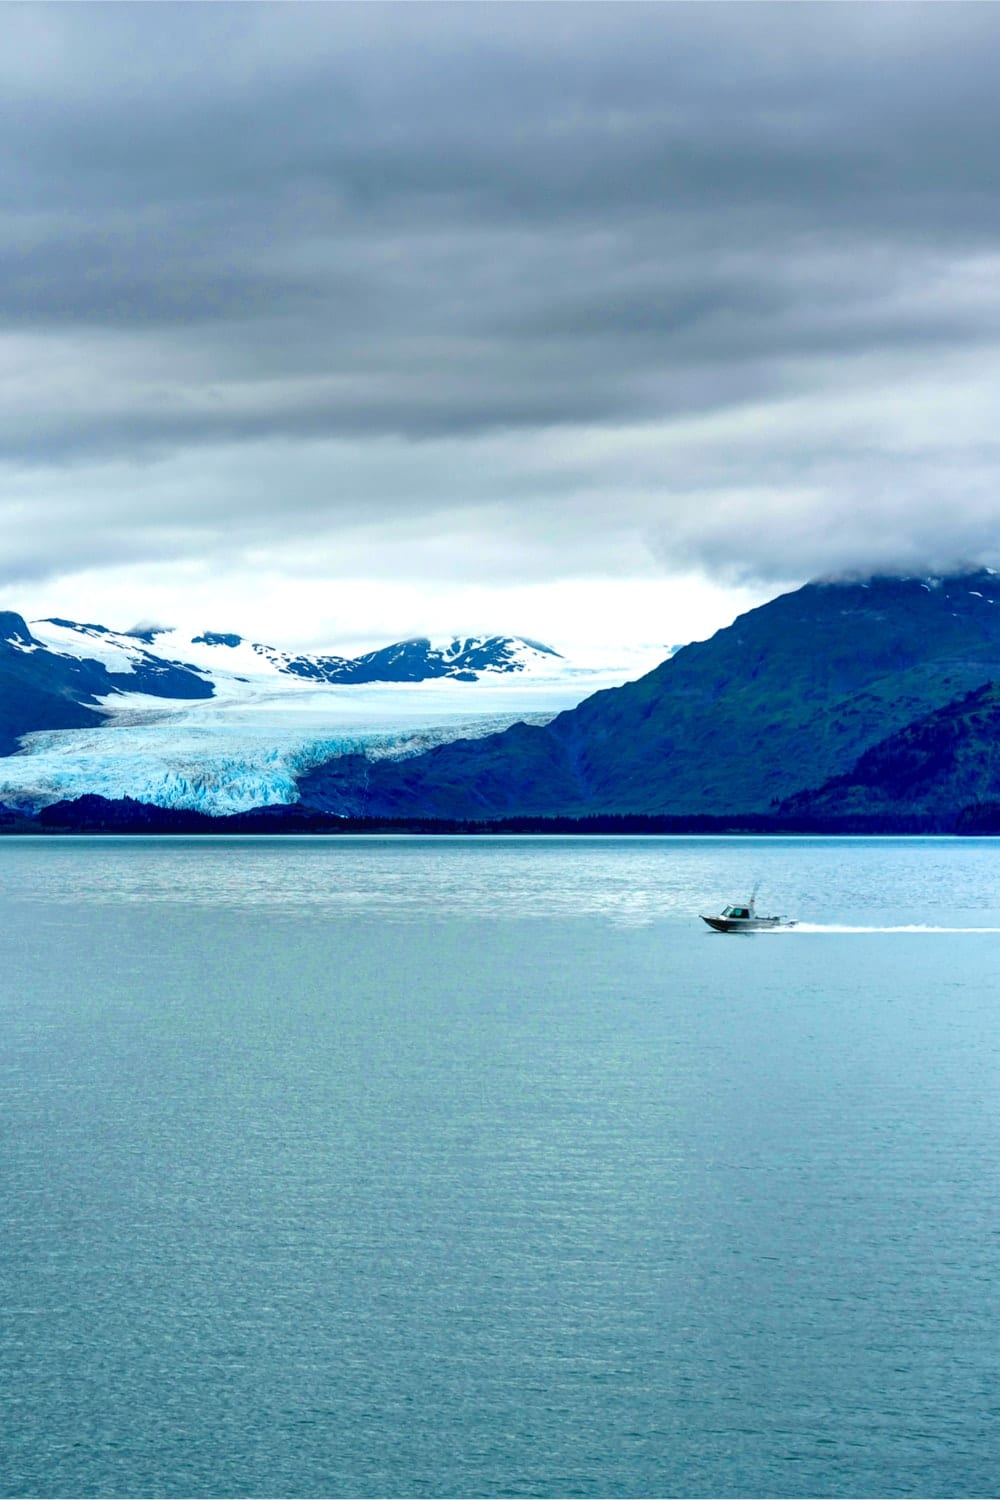 a tidewater glacier in scenic Alaskan waters